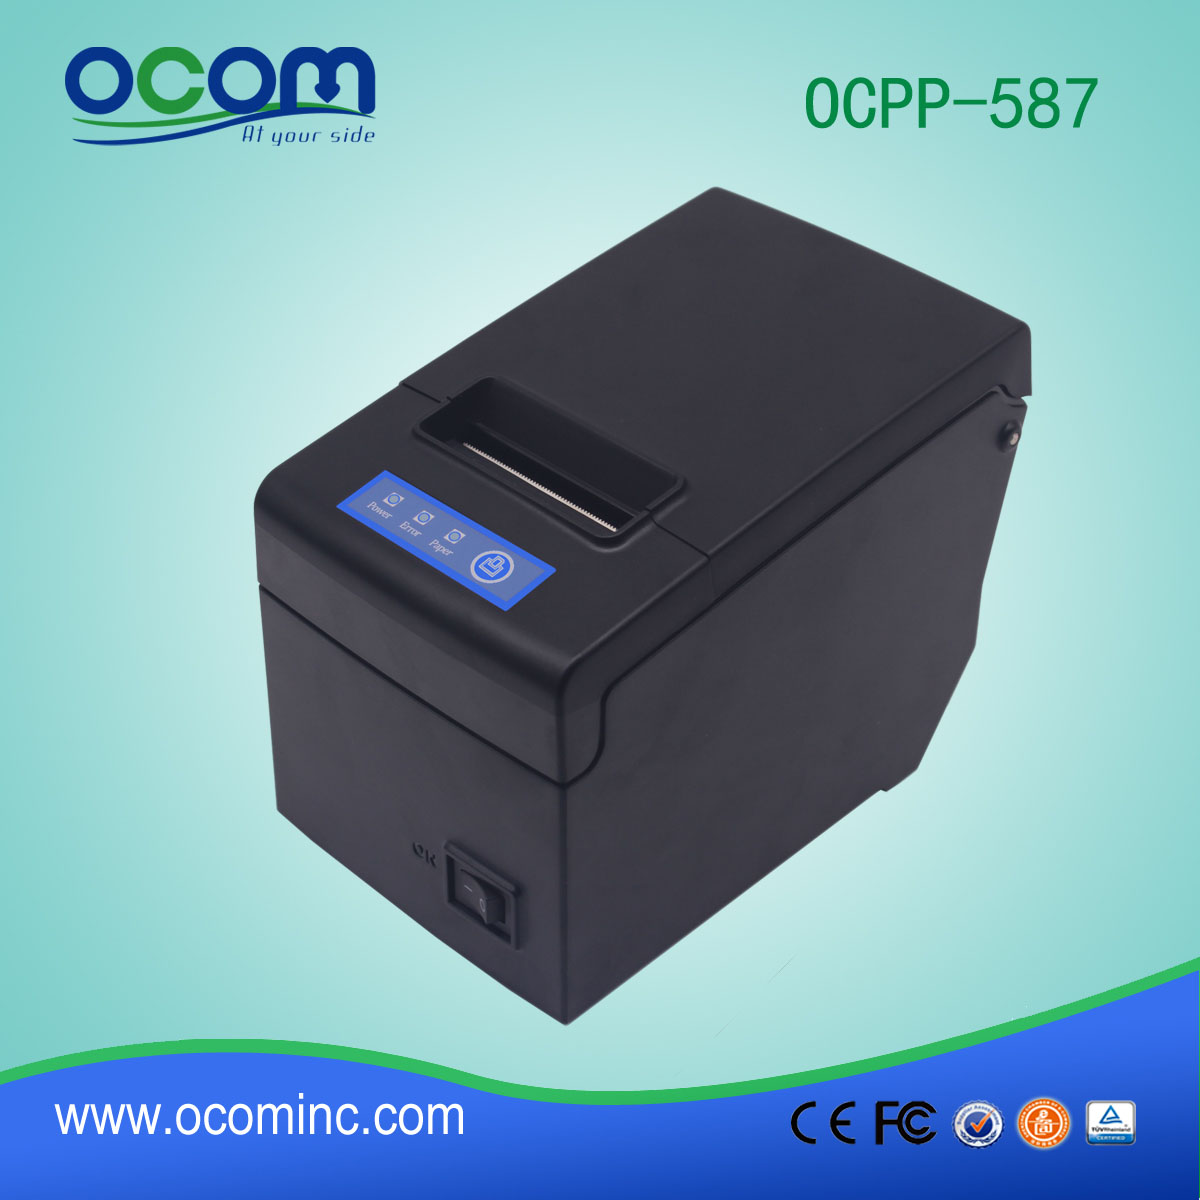 Imprimante de reçus thermiques OCPP-587-UR 58mm avec grand support de papier Ports USB + COM